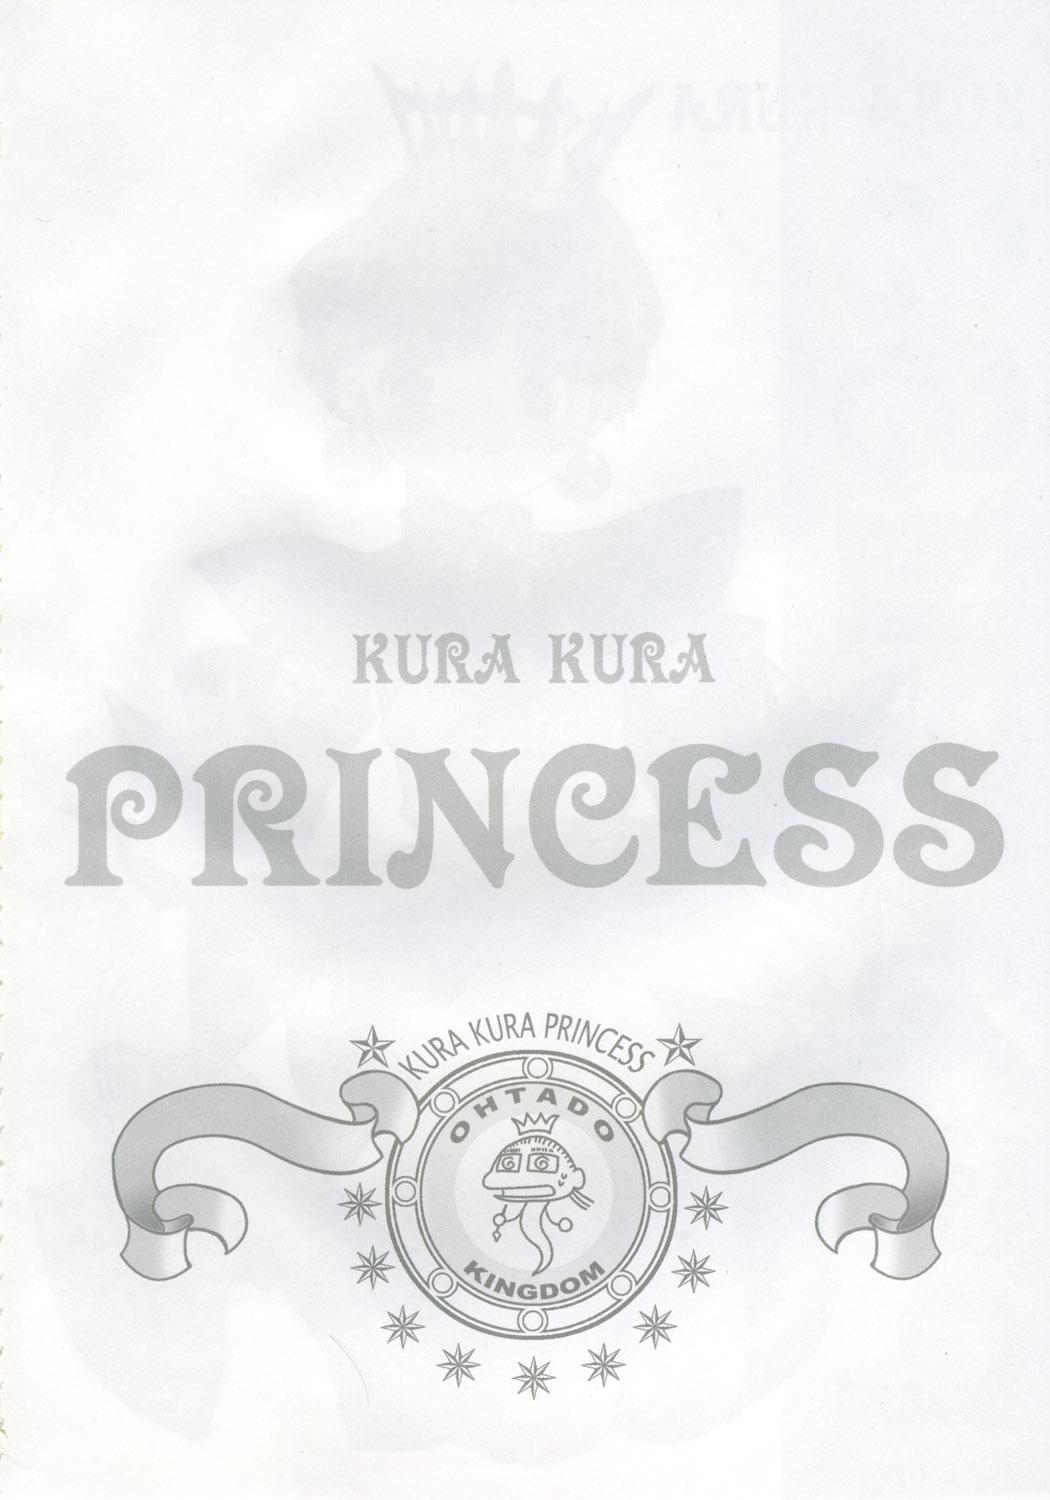 KURA KURA PRINCESS 2